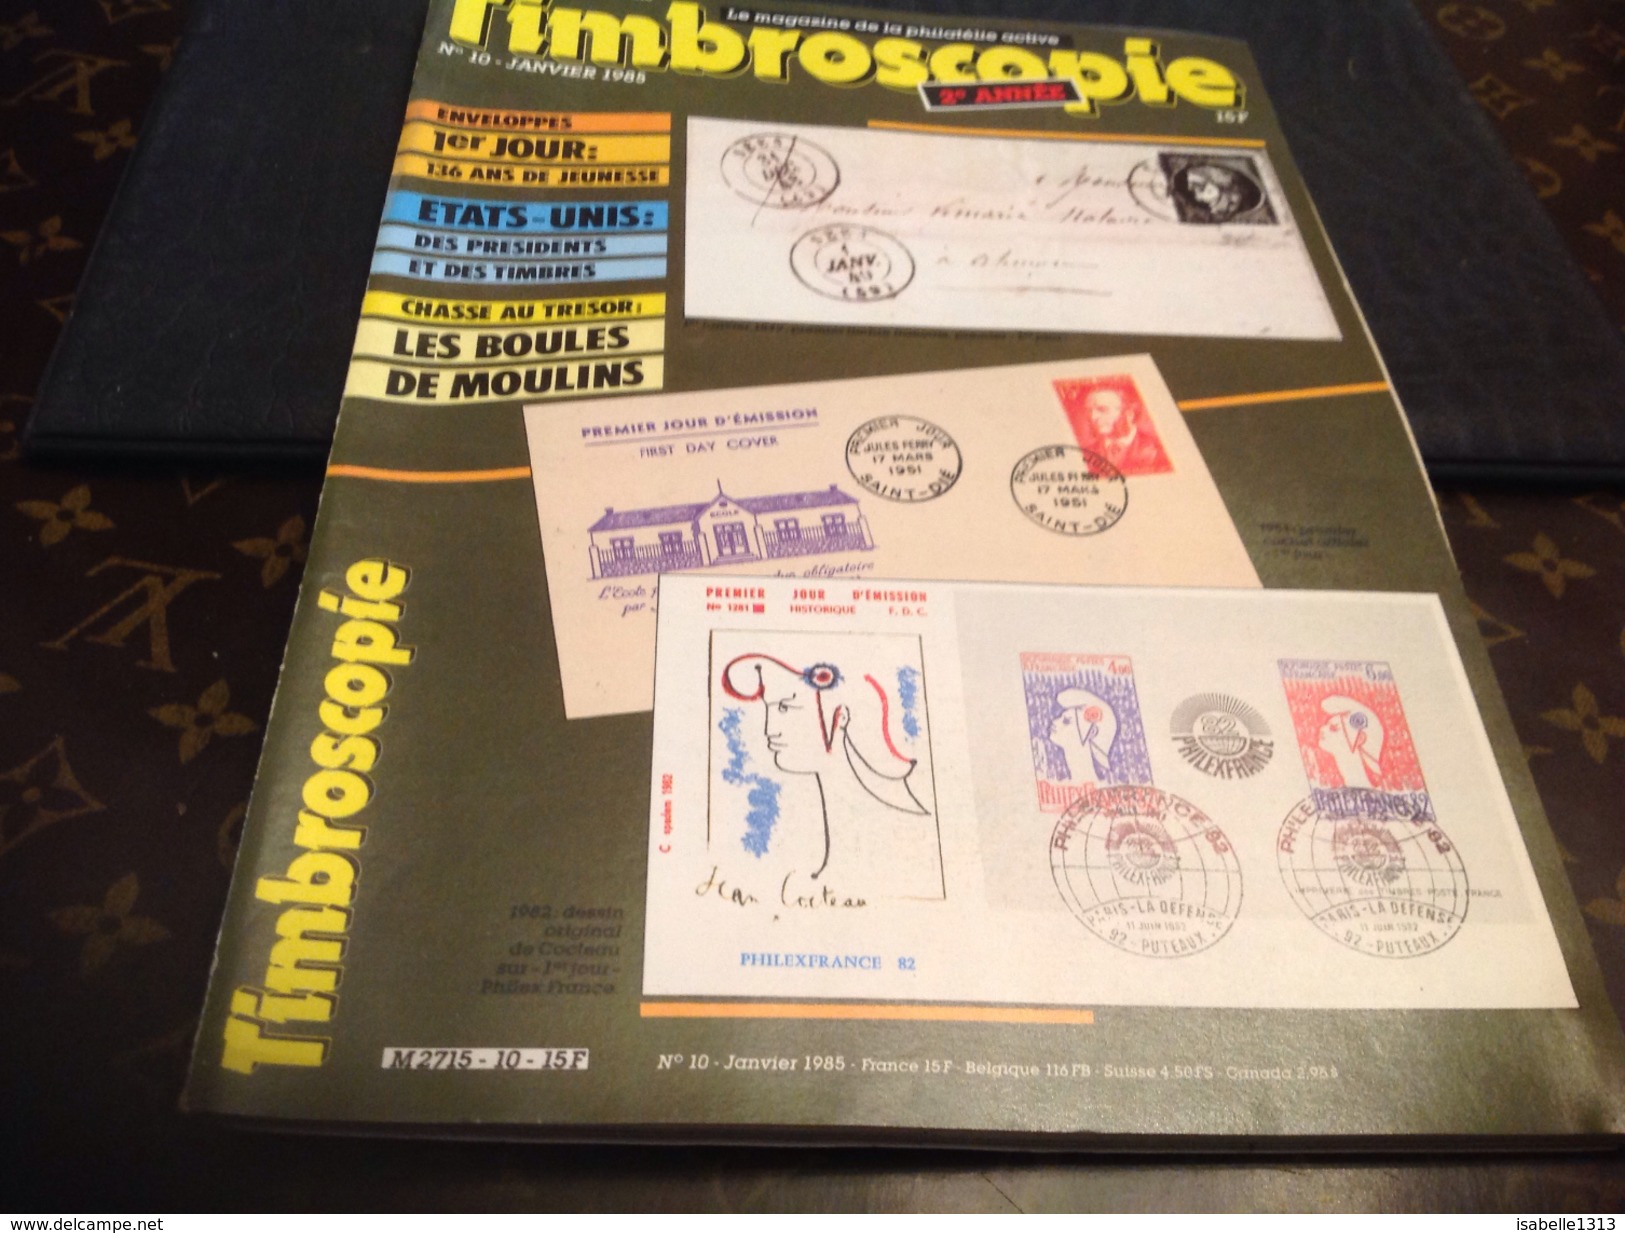 Timbroscopie 1985  1 Jour - Französisch (bis 1940)